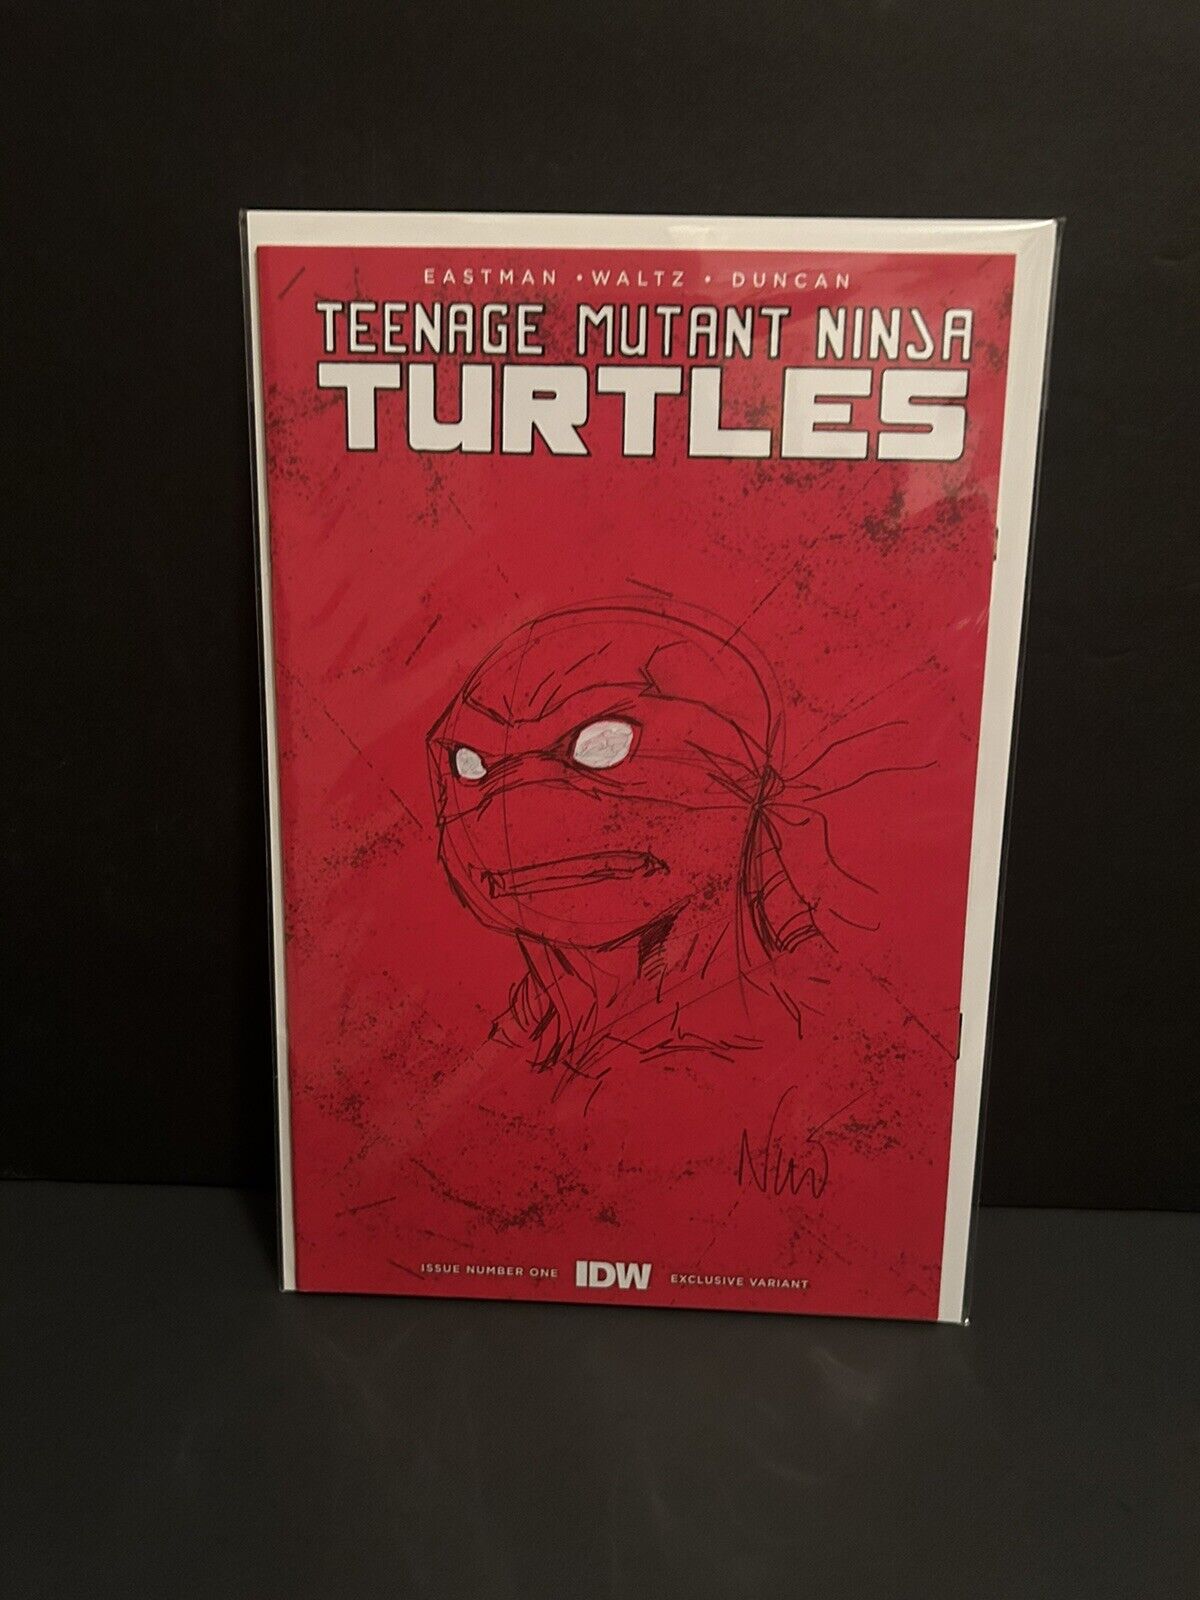 Teenage Mutant Ninja Turtles#1NYCC Red Blank Variant with Rafael original sketch